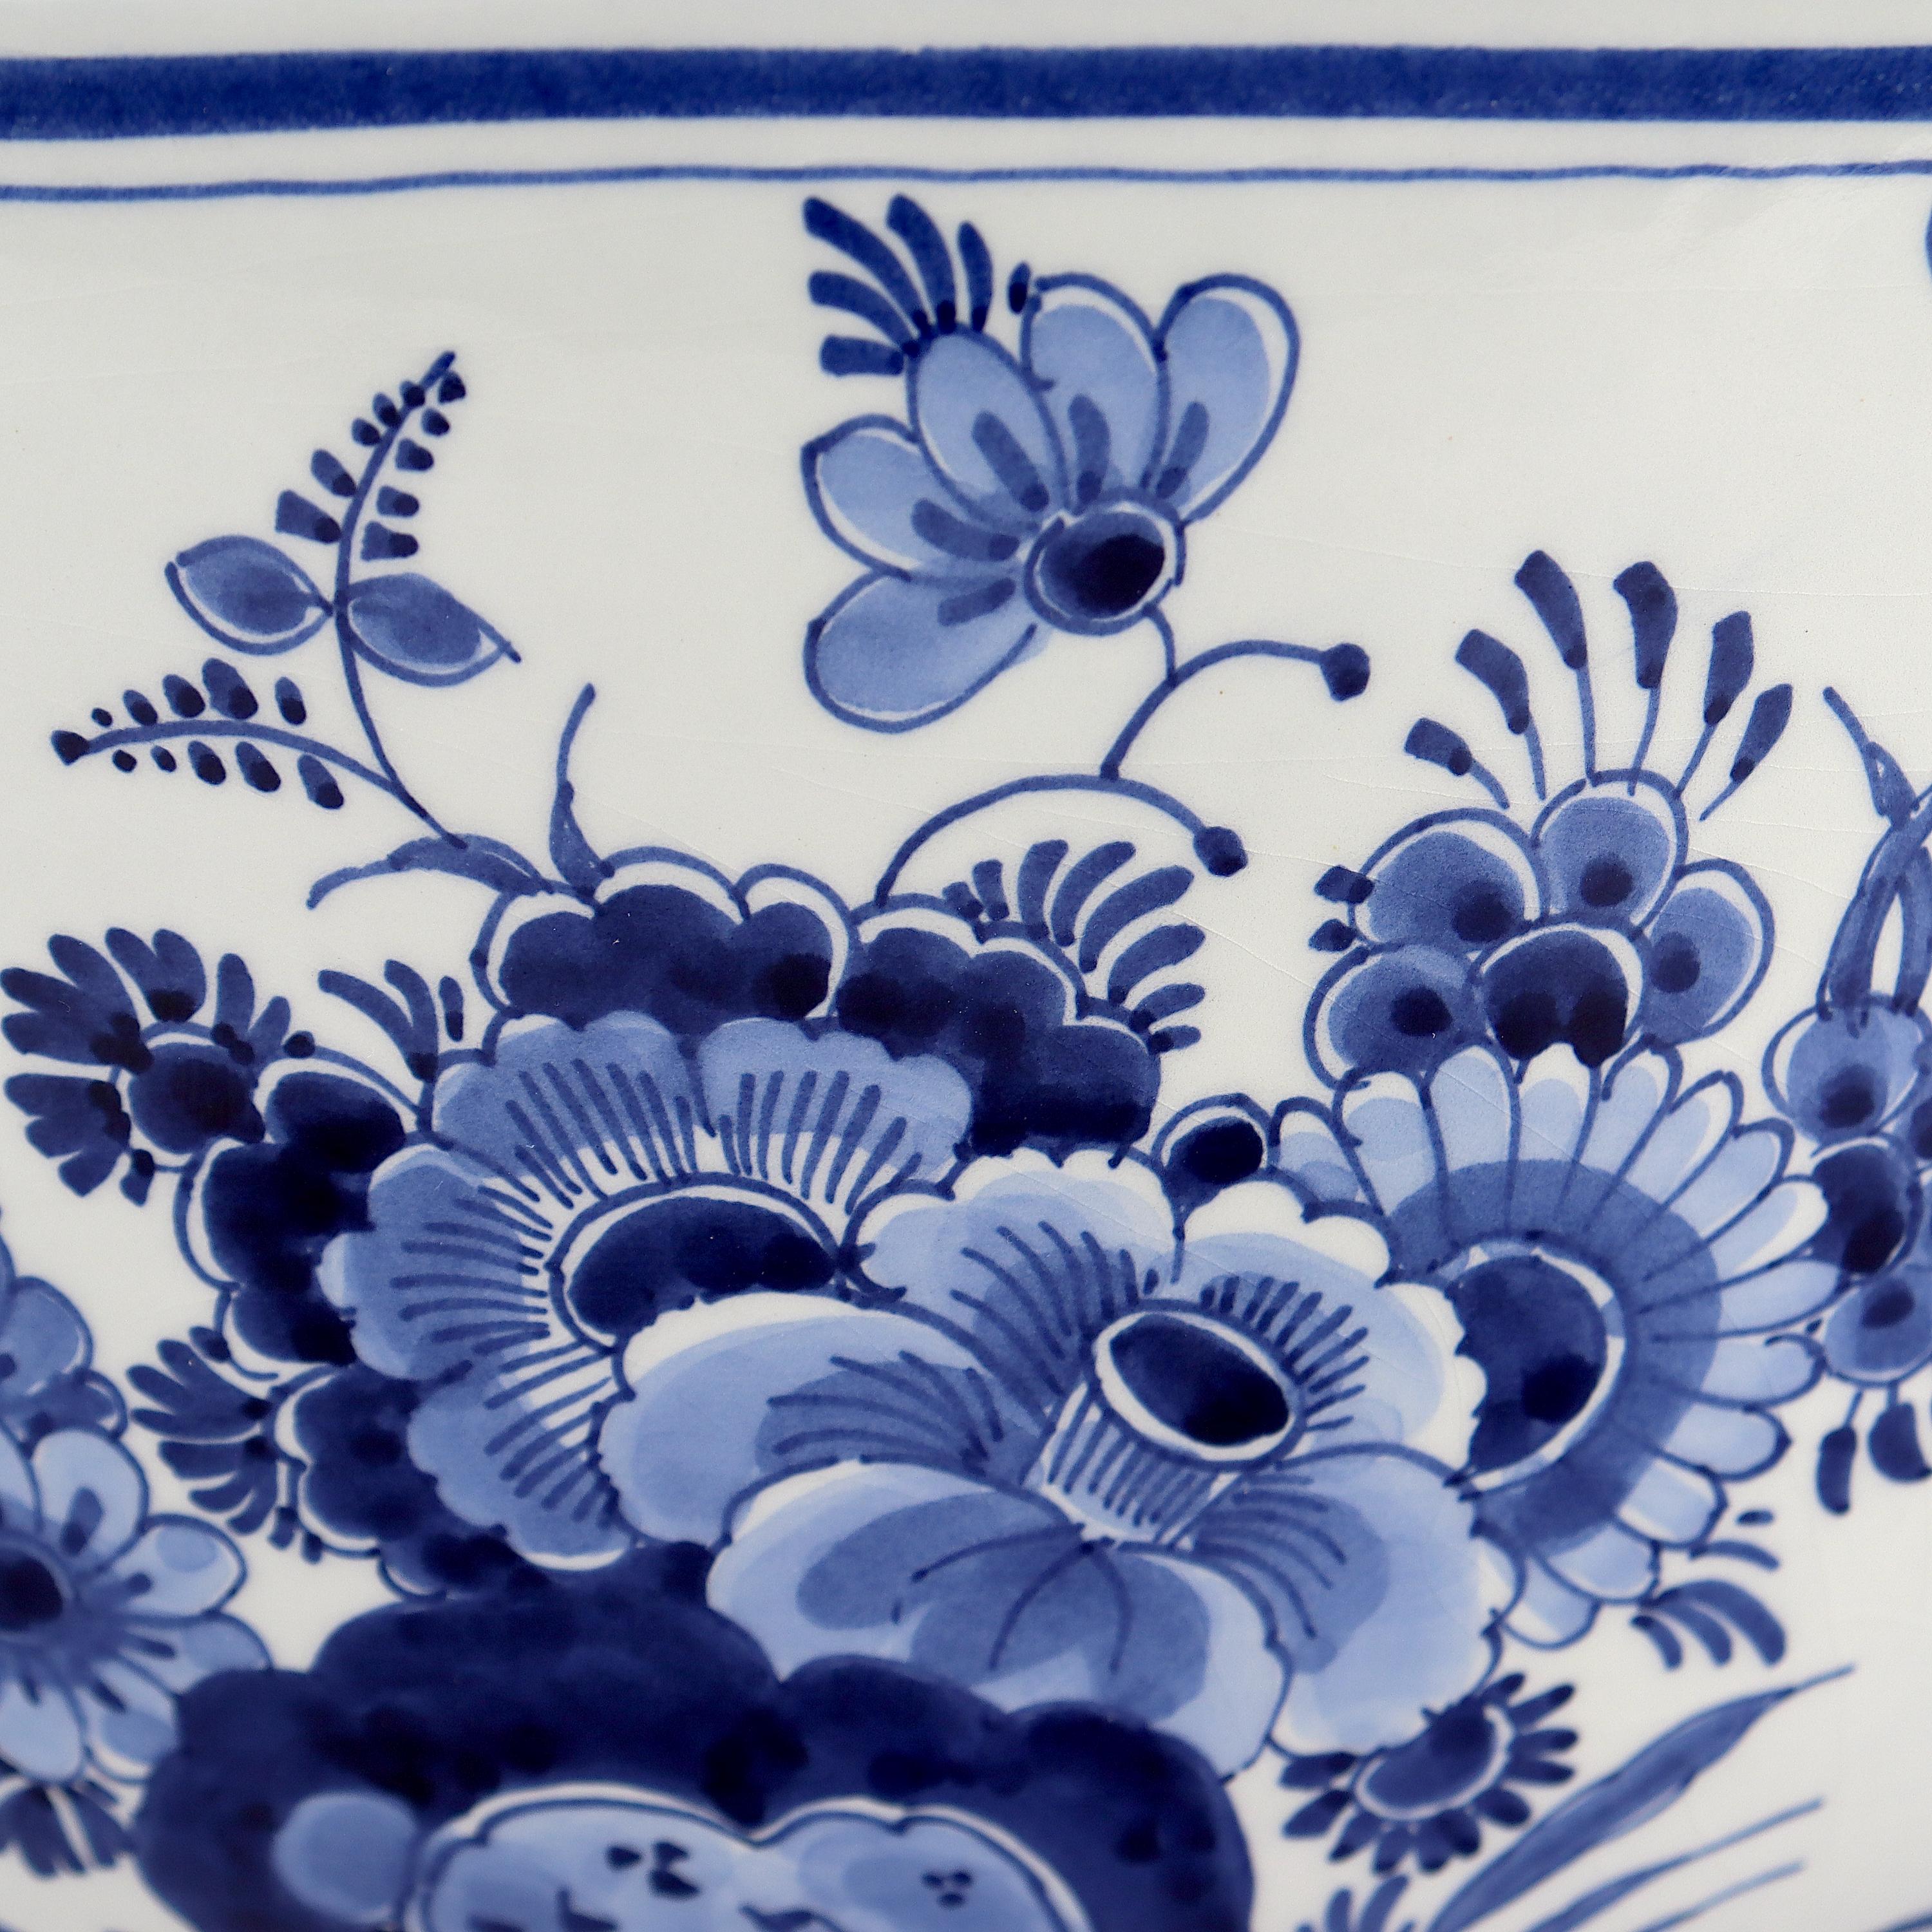 Late 20th Century Vintage De Porceleyne Fles Dutch Delft Blue & White Pottery Punch Bowl